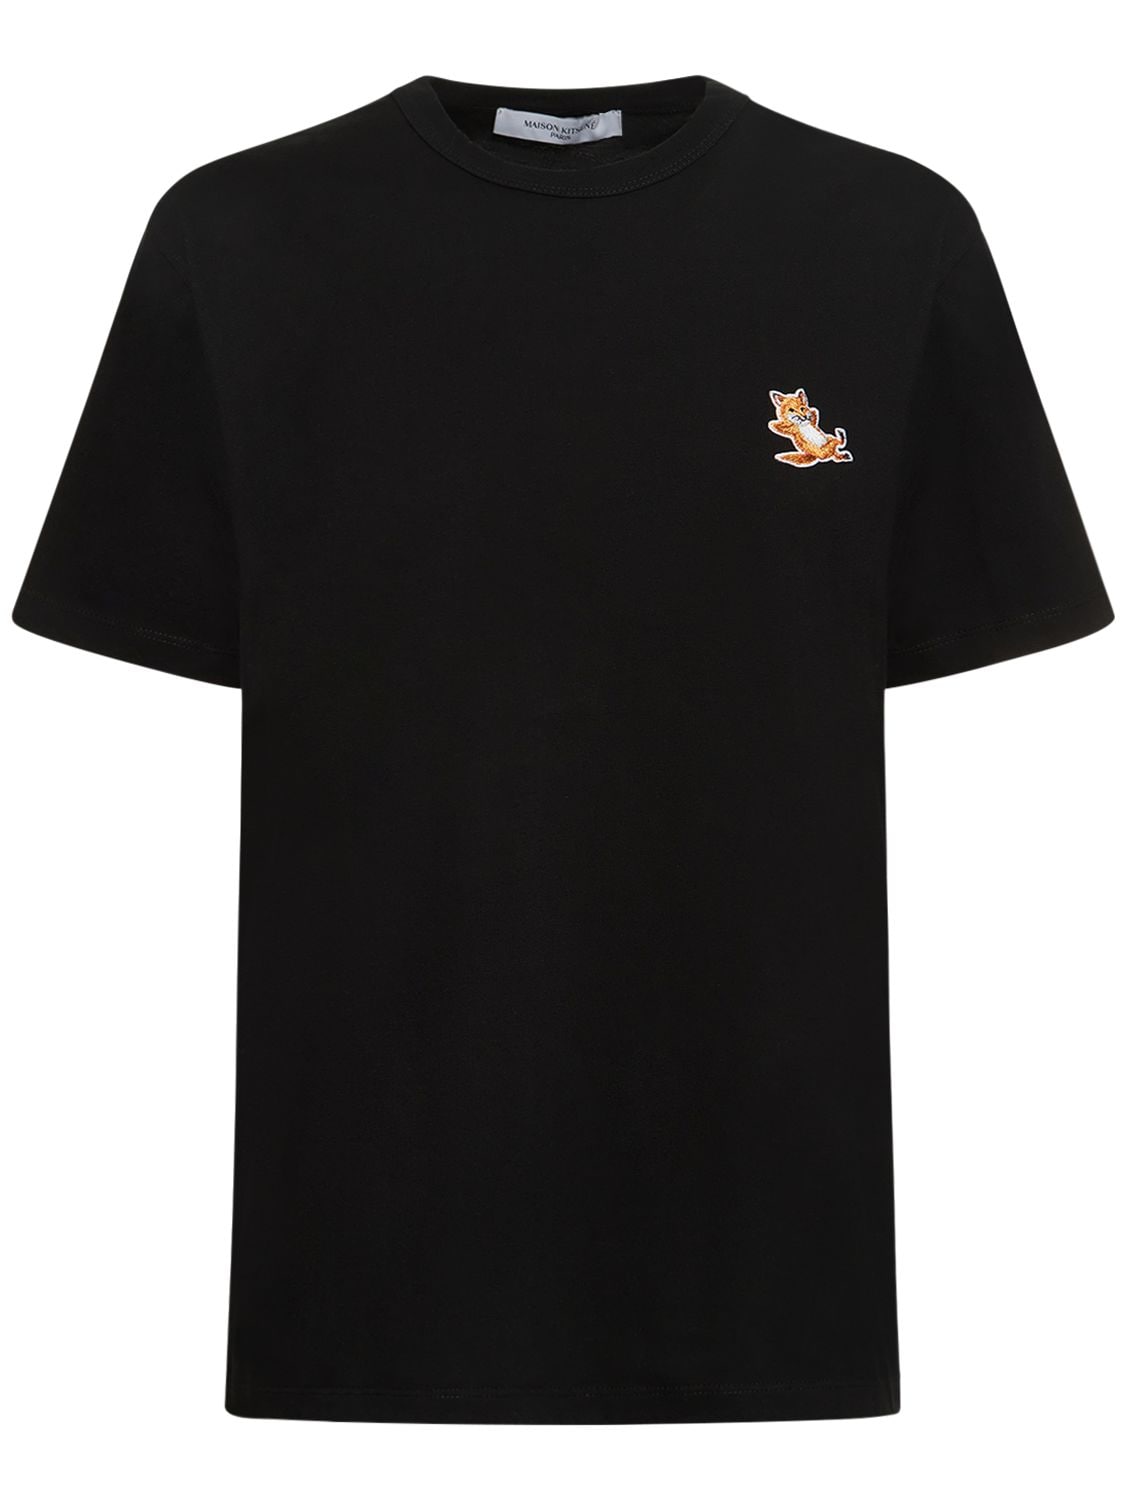 Maison Kitsuné Chillax Fox Patch Cotton T-shirt In Black